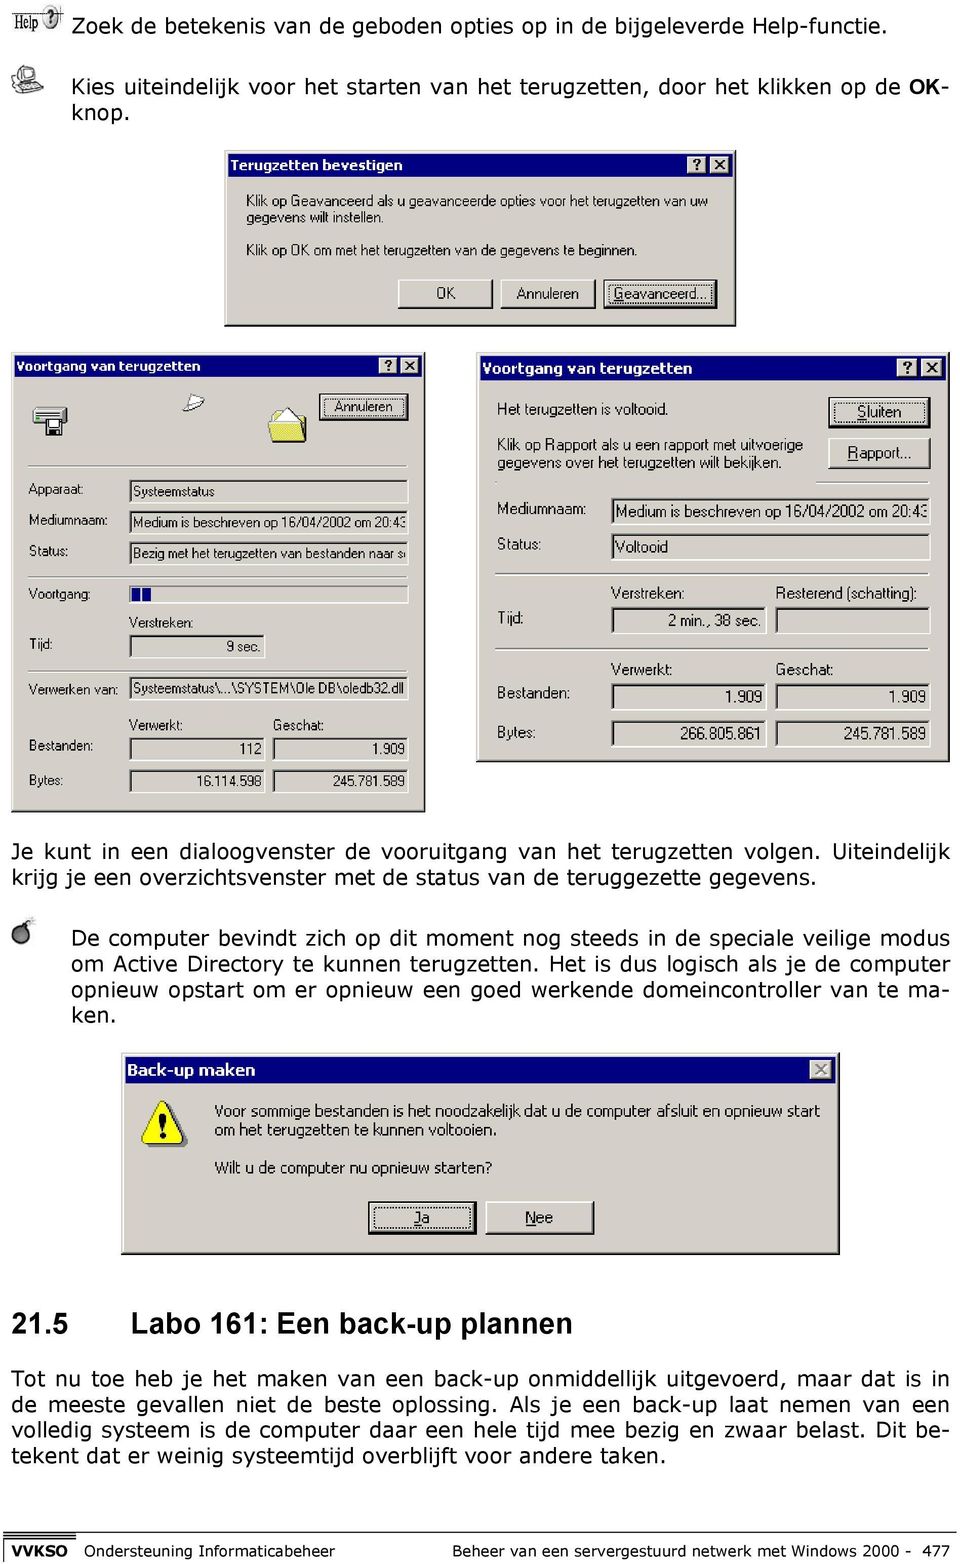 De computer bevindt zich op dit moment nog steeds in de speciale veilige modus om Active Directory te kunnen terugzetten.